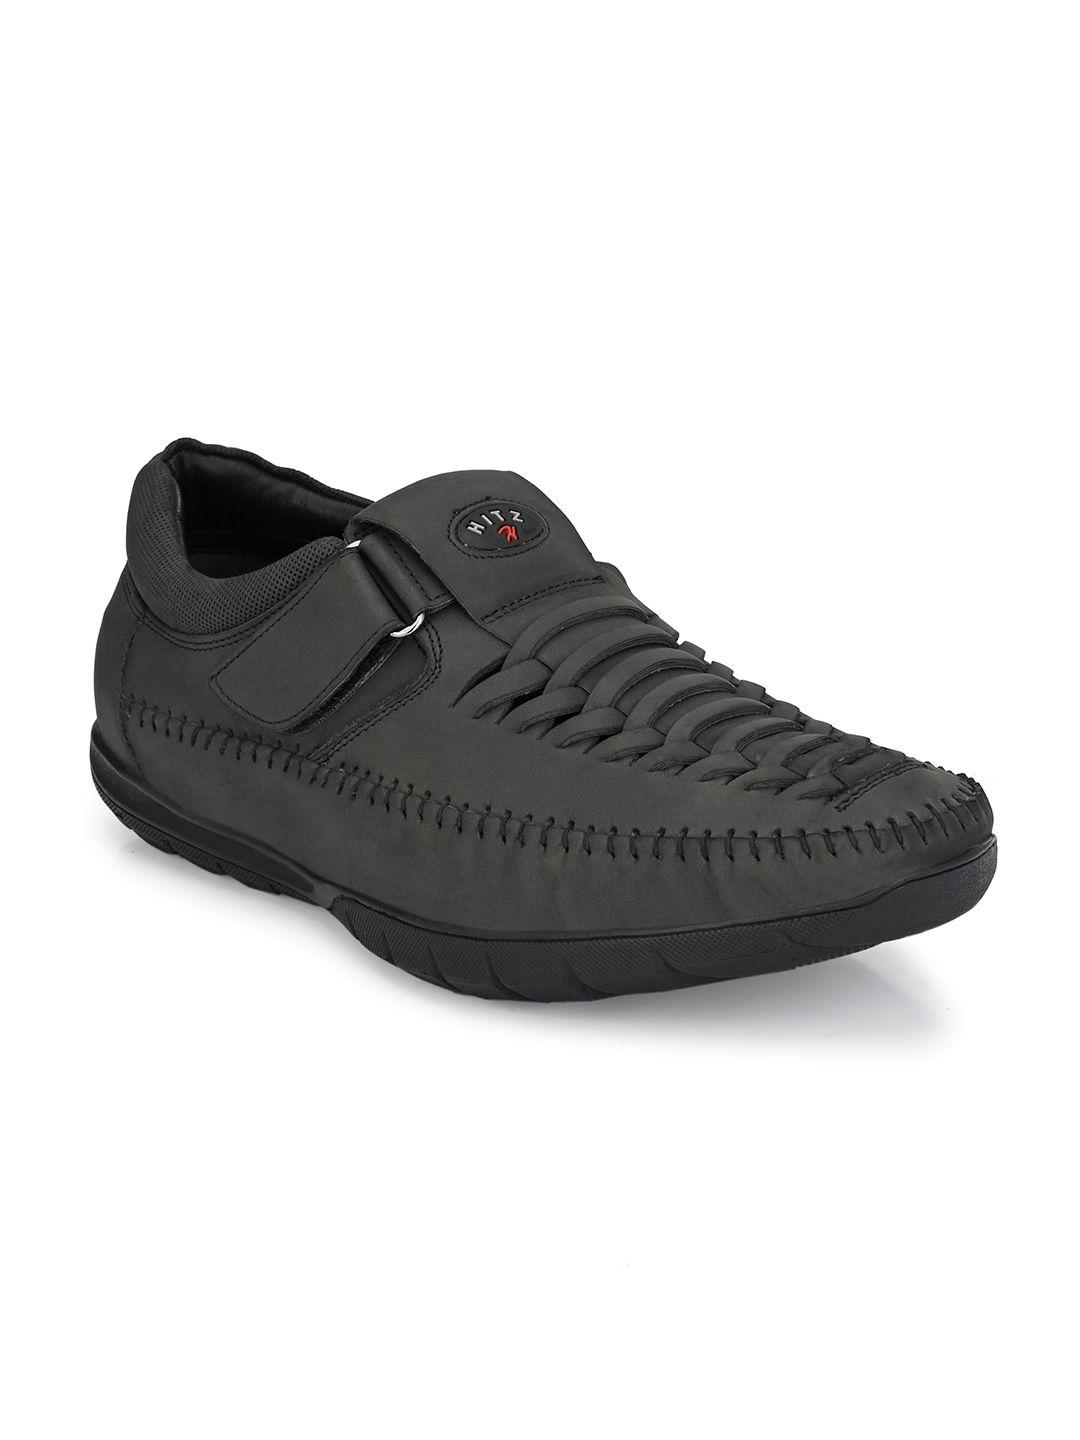 Hitz Men Black Shoe-Style Sandals